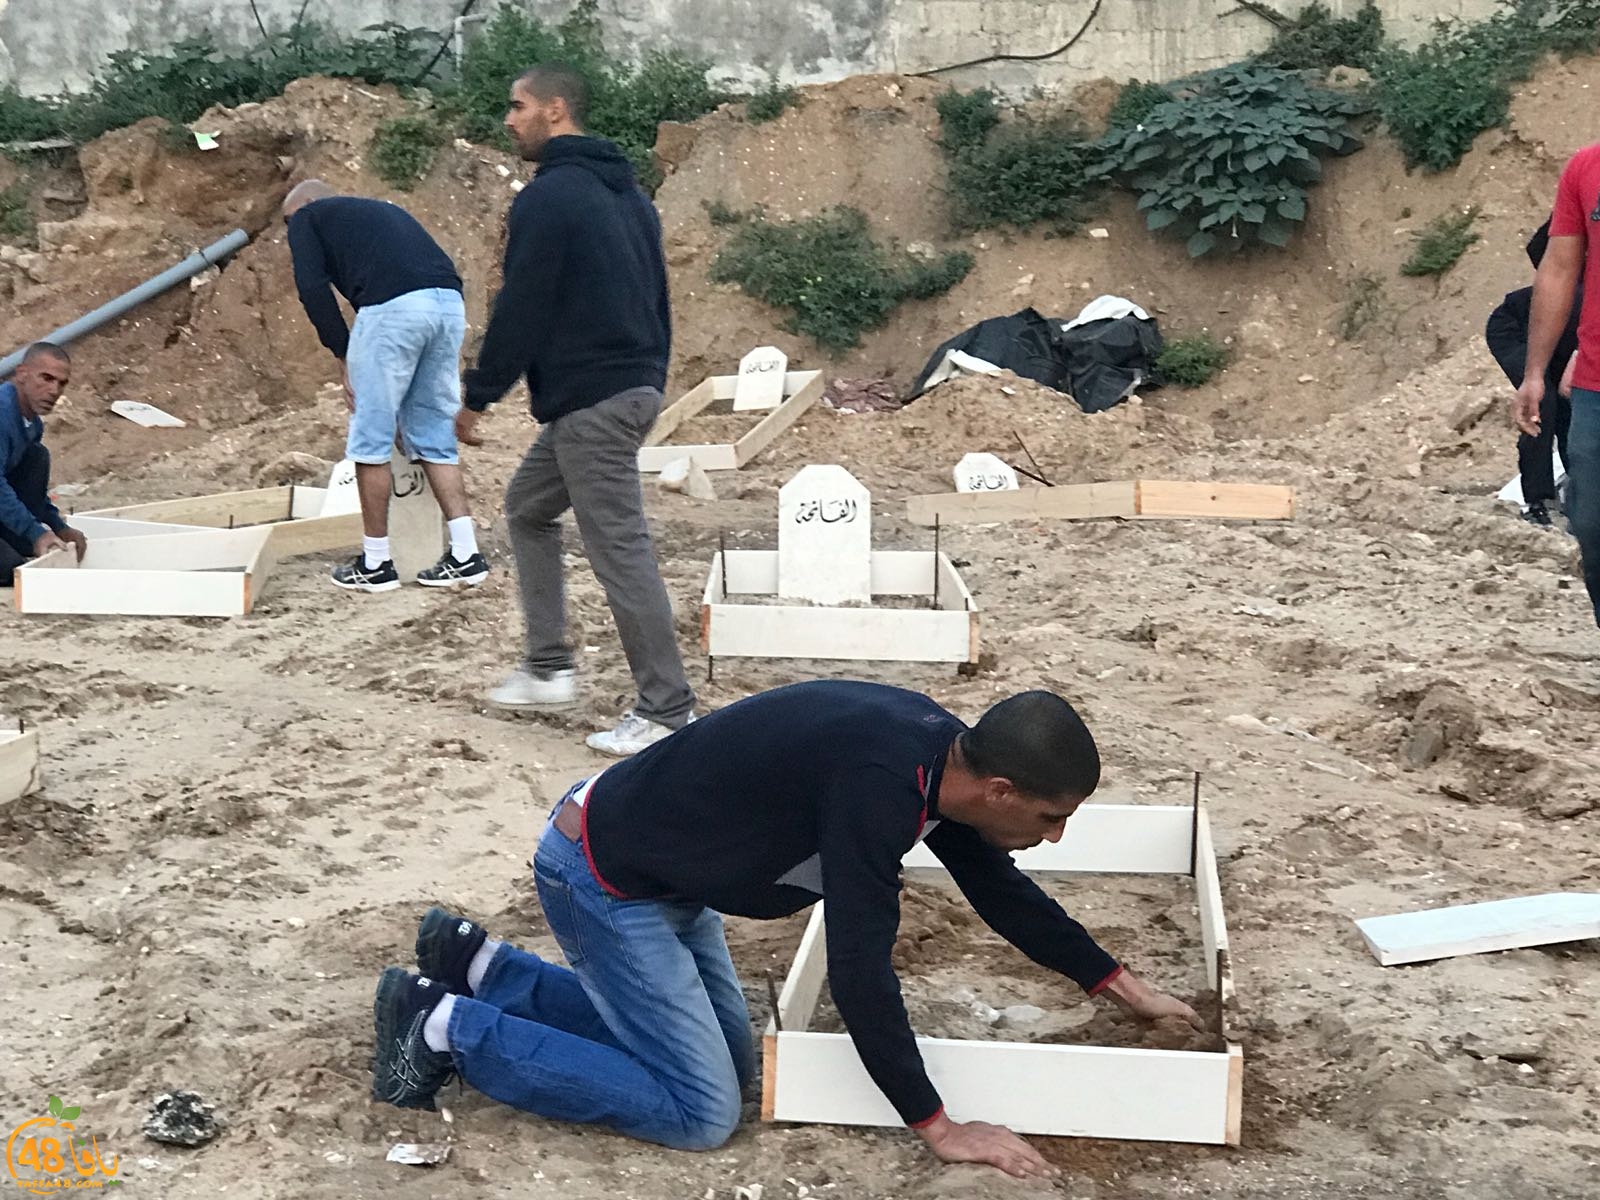 فيديو: لجنة إكرام الميت بيافا تعيد بناء القبور في مقبرة الاسعاف وتضع فوقها الشواهد